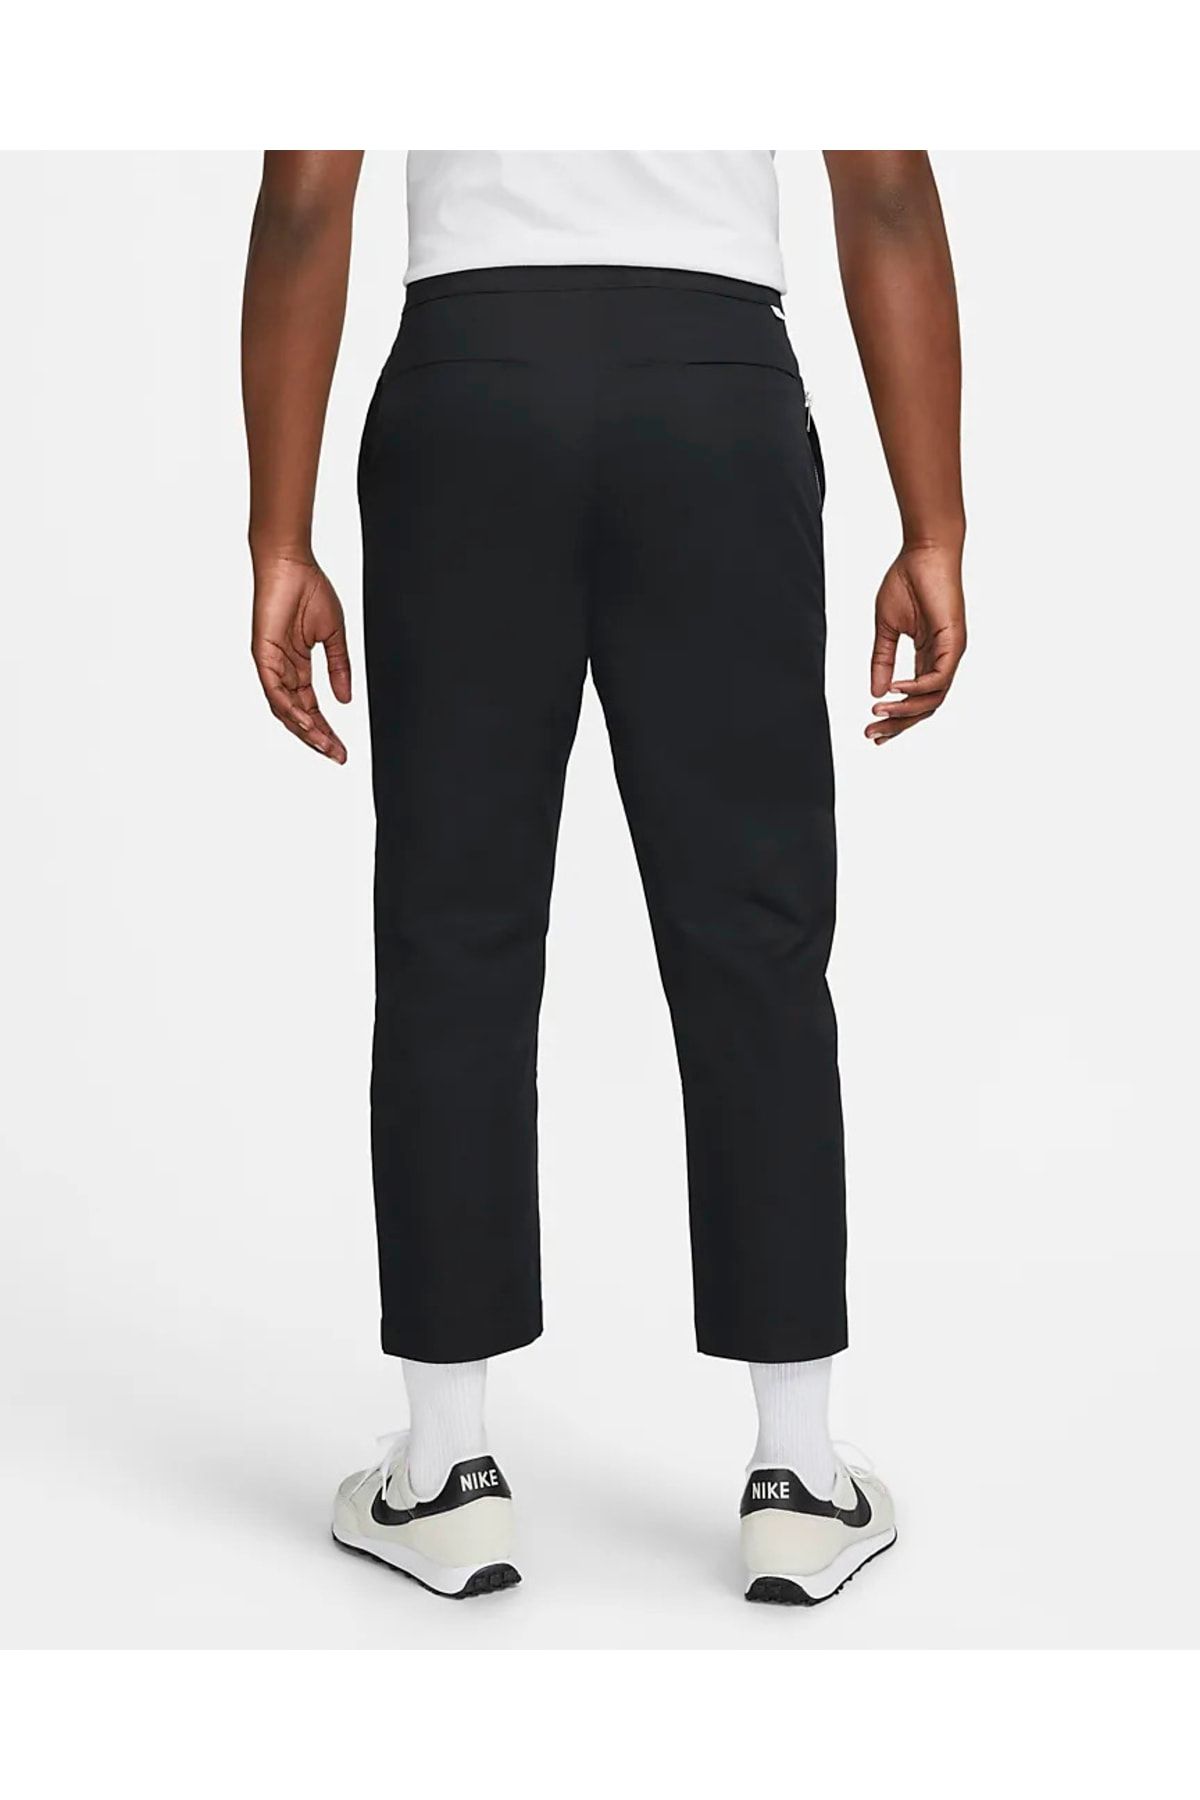 Nike Sportswear Style Essentials Men's Unlined Cropped Pantolon